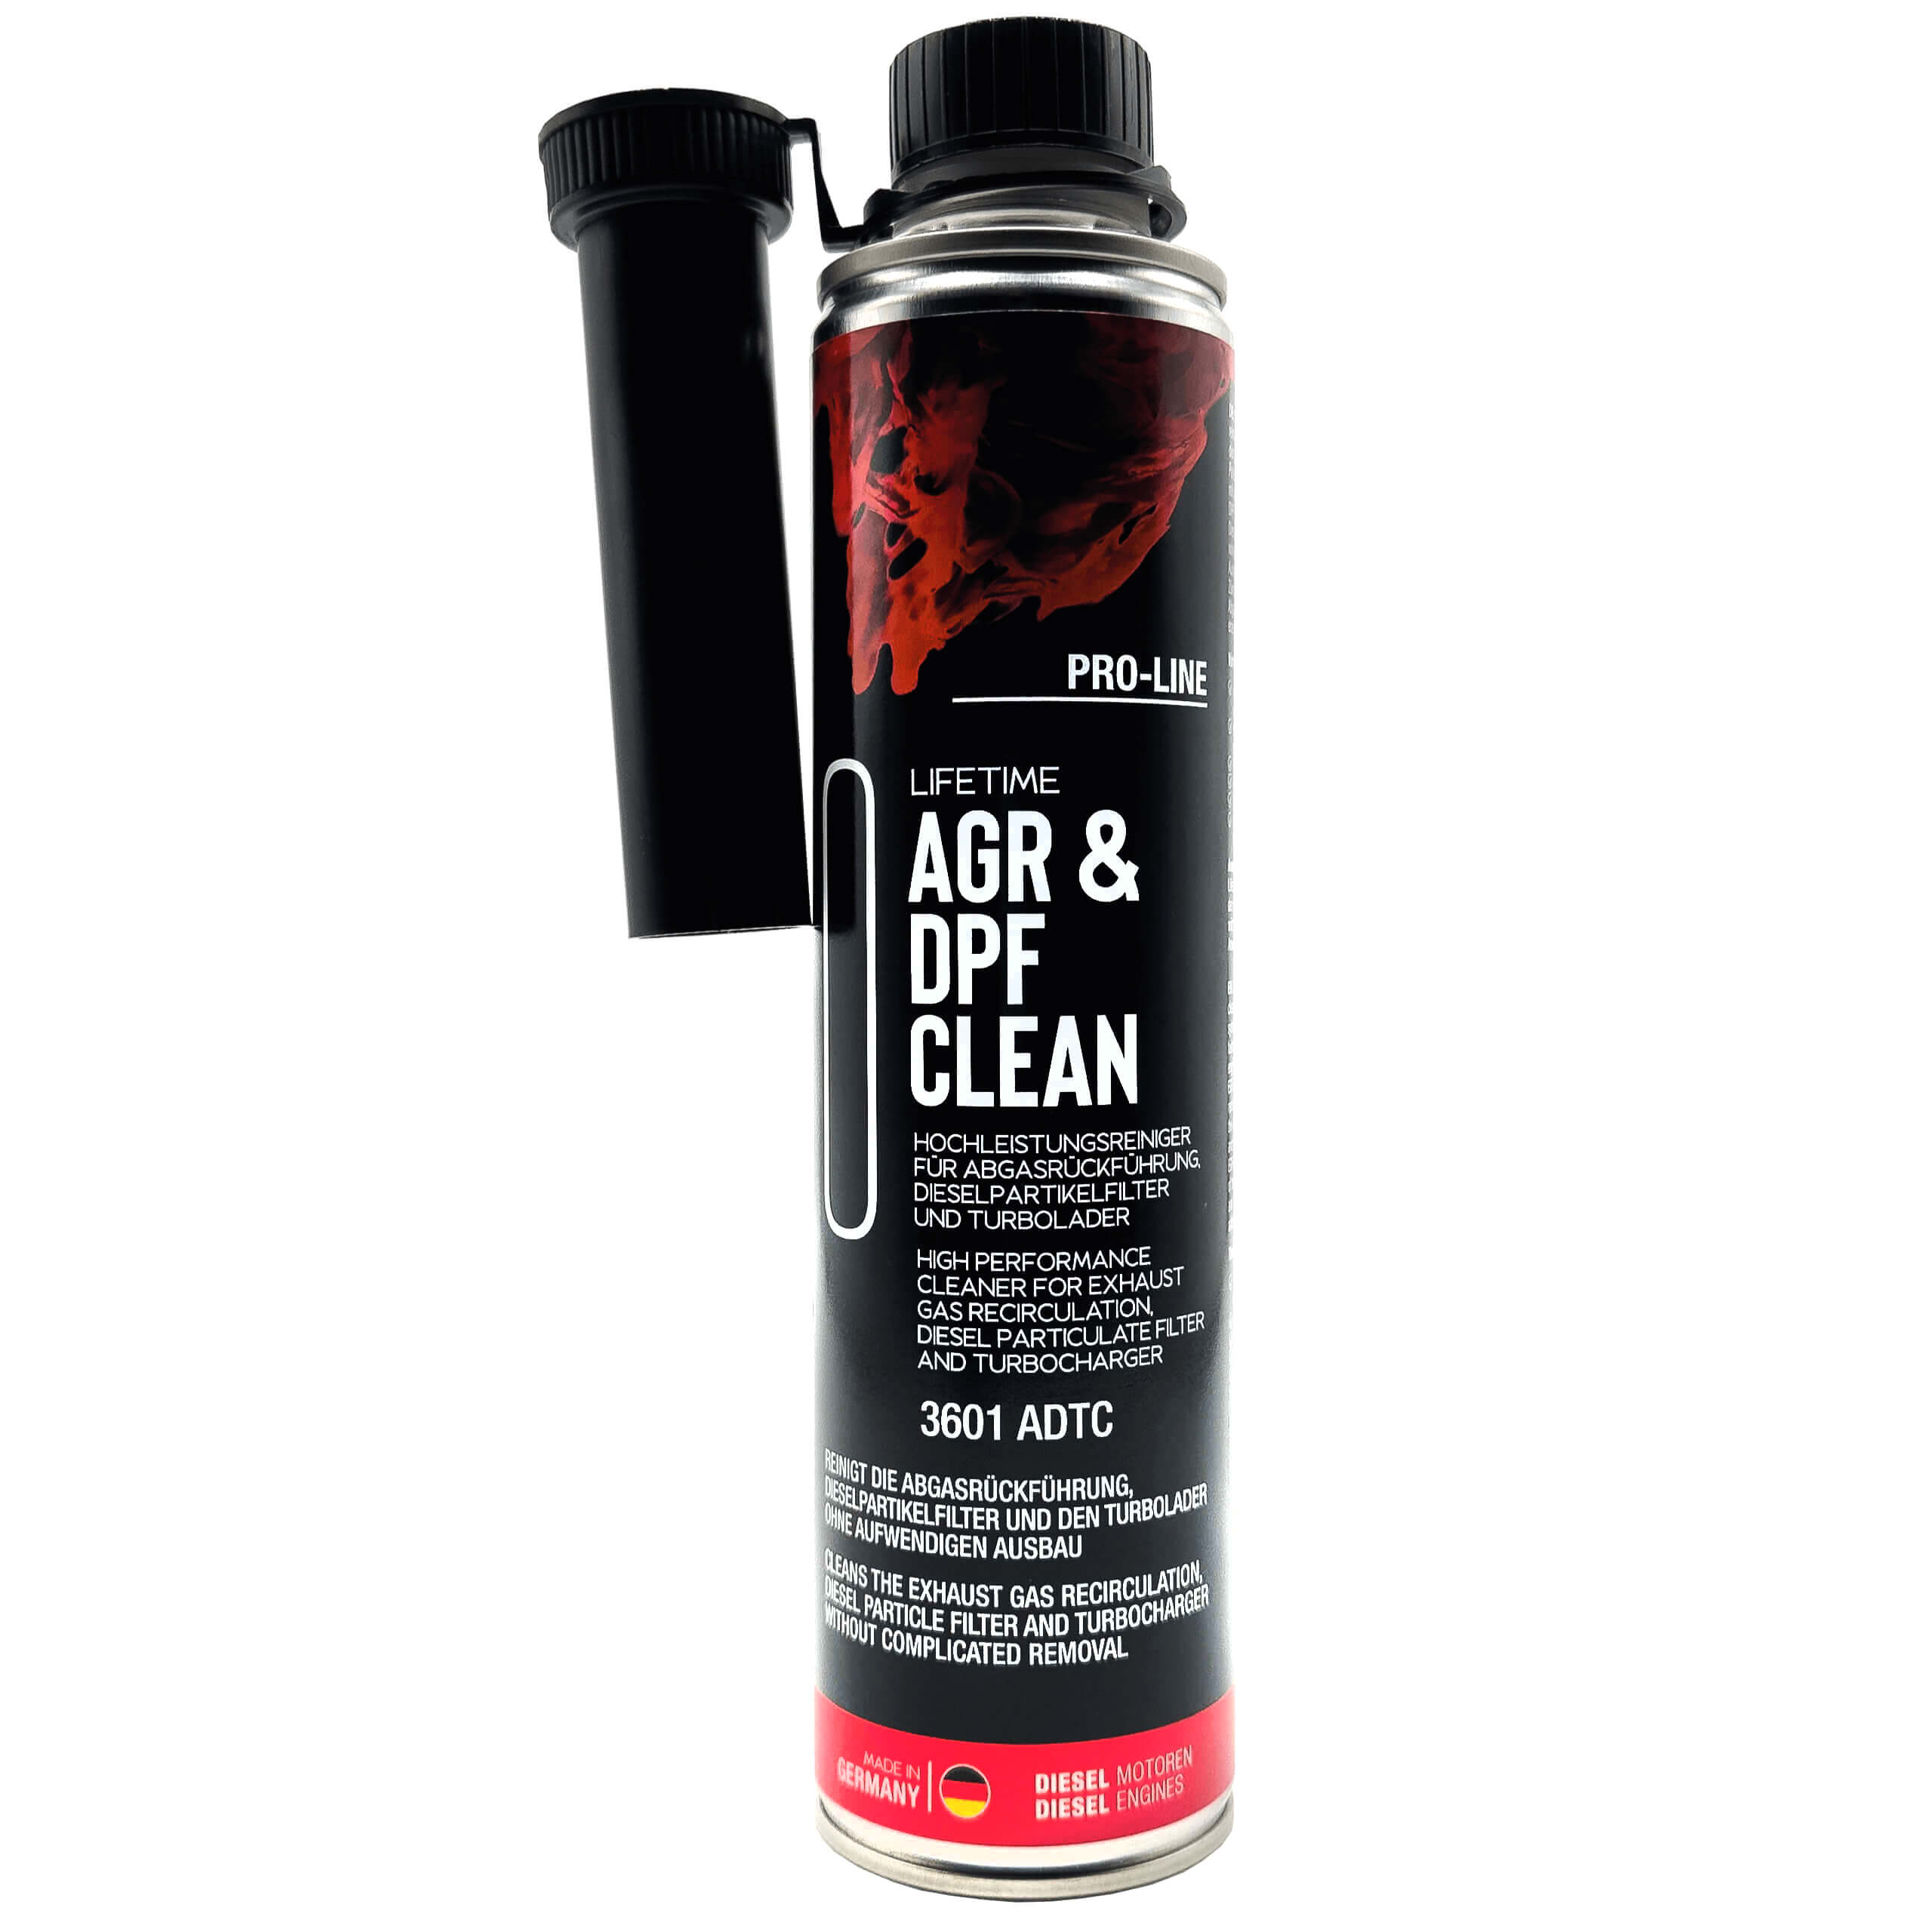 Lifetime AGR & DPF CLEAN Pro-Line 500 ml